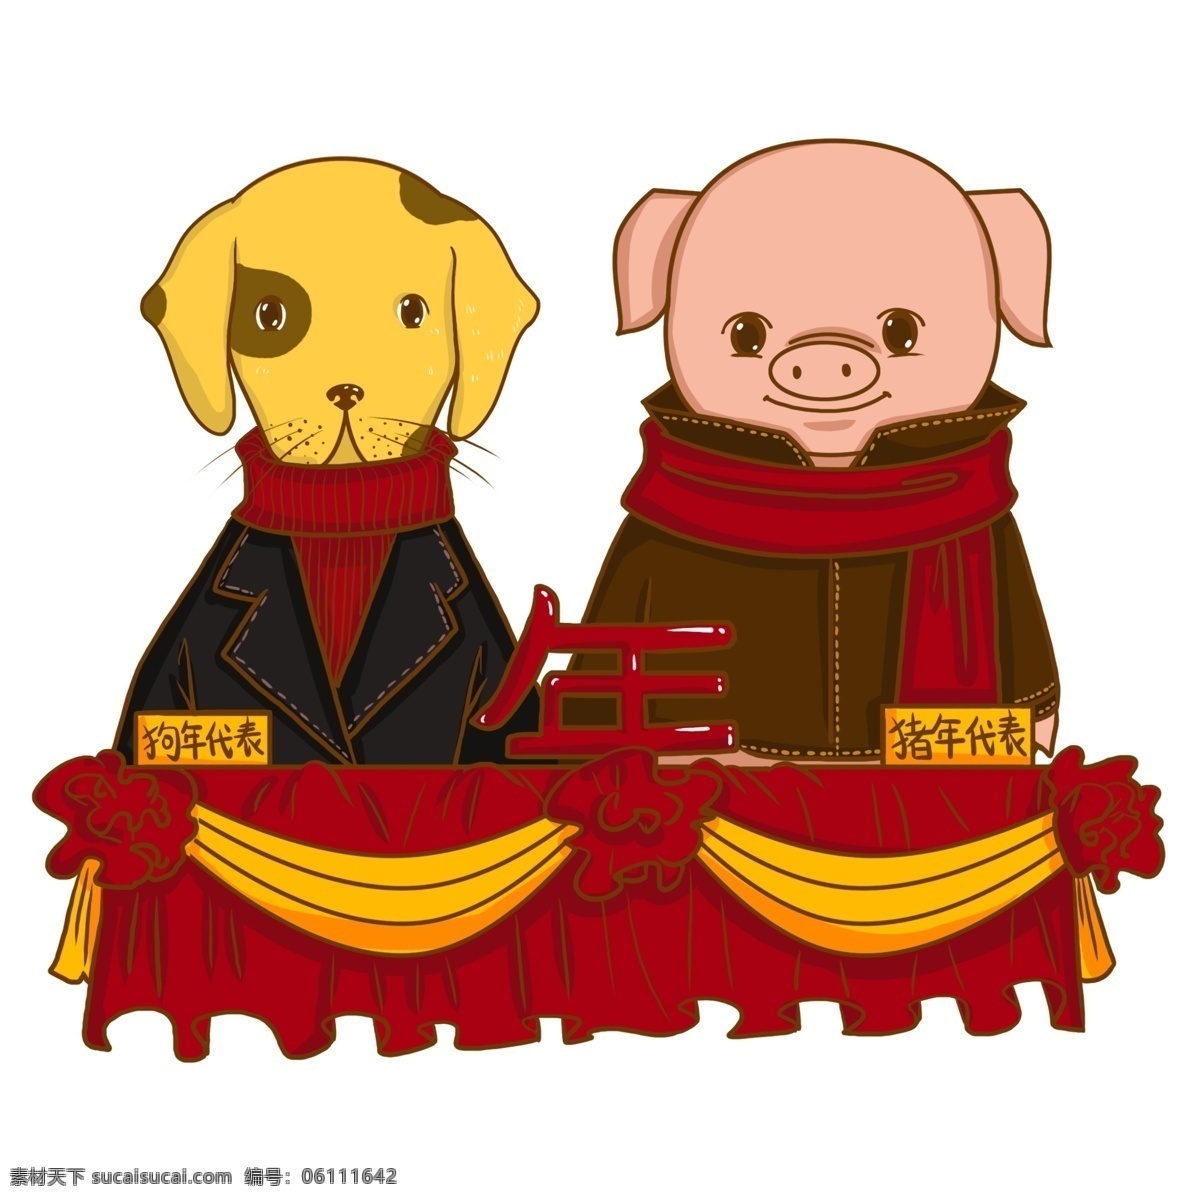 卡通 手绘 新年 福 猪 忠 犬 卡通小猪 新年快乐 新年祝贺 过新年 小猪 春节 猪年 过年 福猪 迎新春 可爱 狗